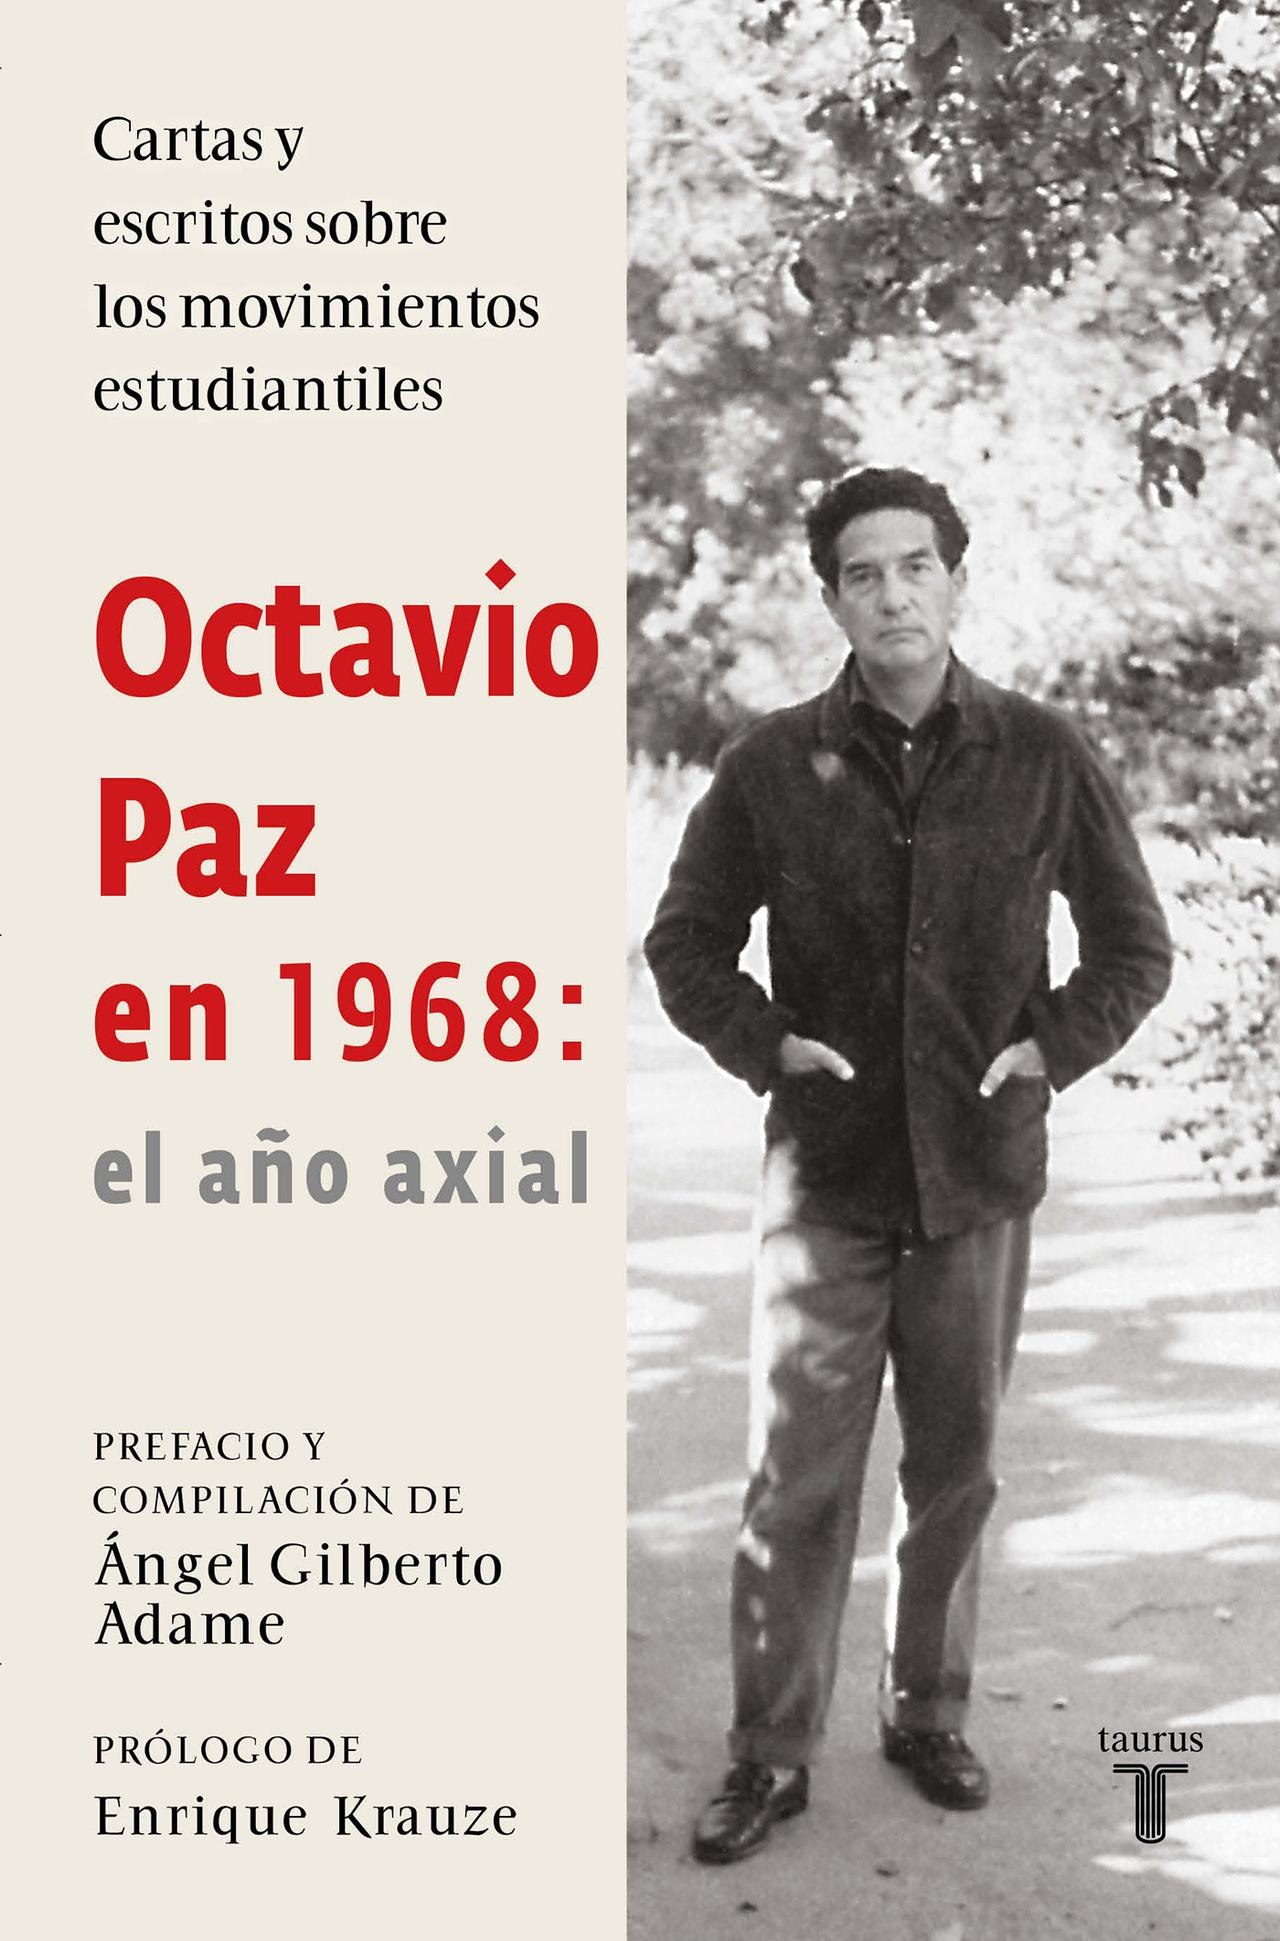 Investigación. El historiador Ángel Gilberto Adame ha reunido cartas y ensayos de Octavio Paz, que abordan el tema de los jóvenes, las rebeliones estudiantiles y las libertades, en la década de los 60.